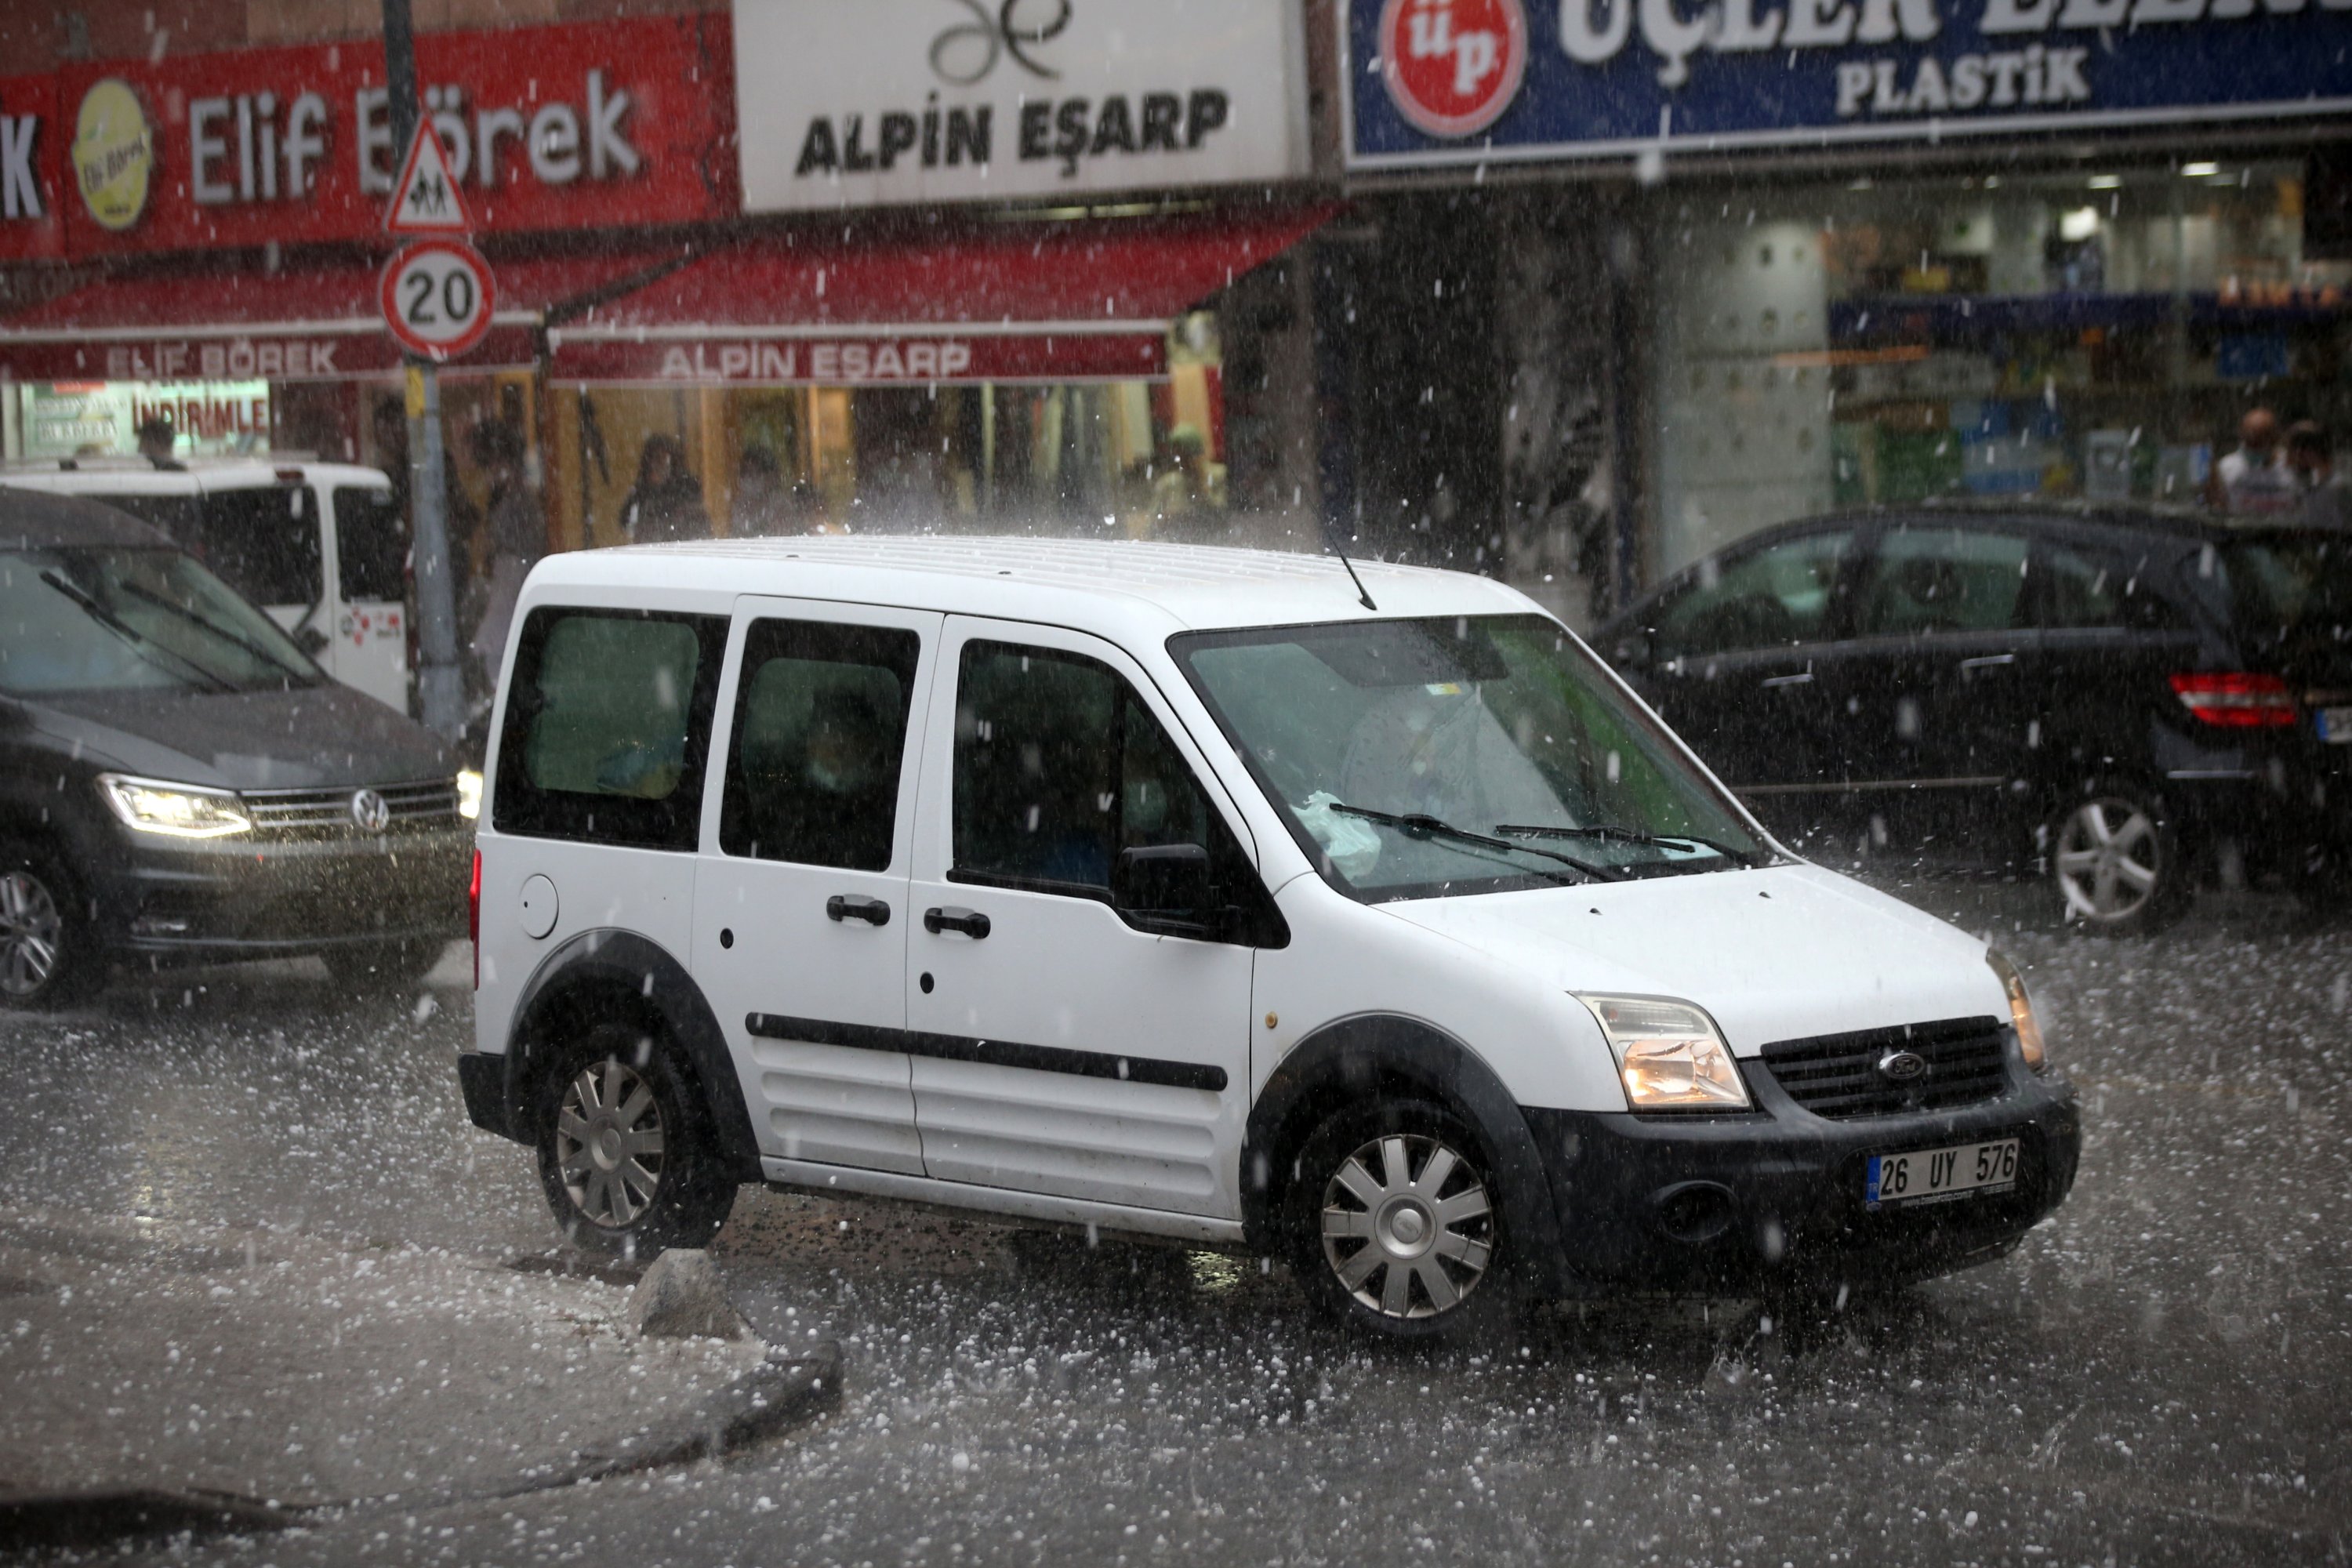  Një makinë lëviz në një rrugë gjatë breshërit, në rrethin Üsküdar të Stambollit, Turqi, 29 shtator, 2020. (Foto AA)